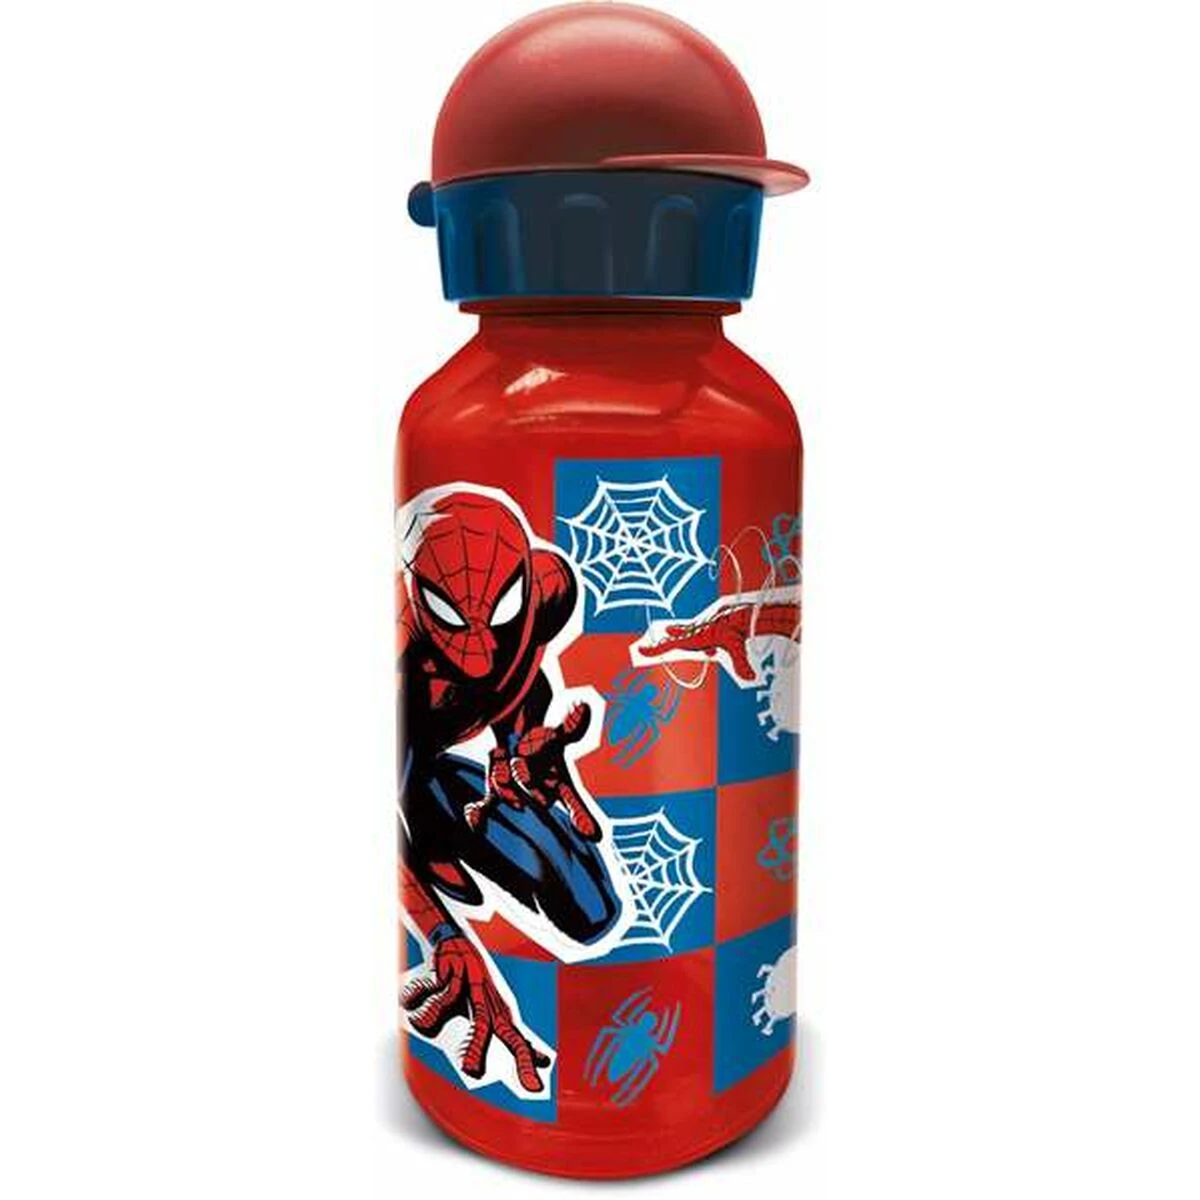 Rode drinkfles met Spider-Man